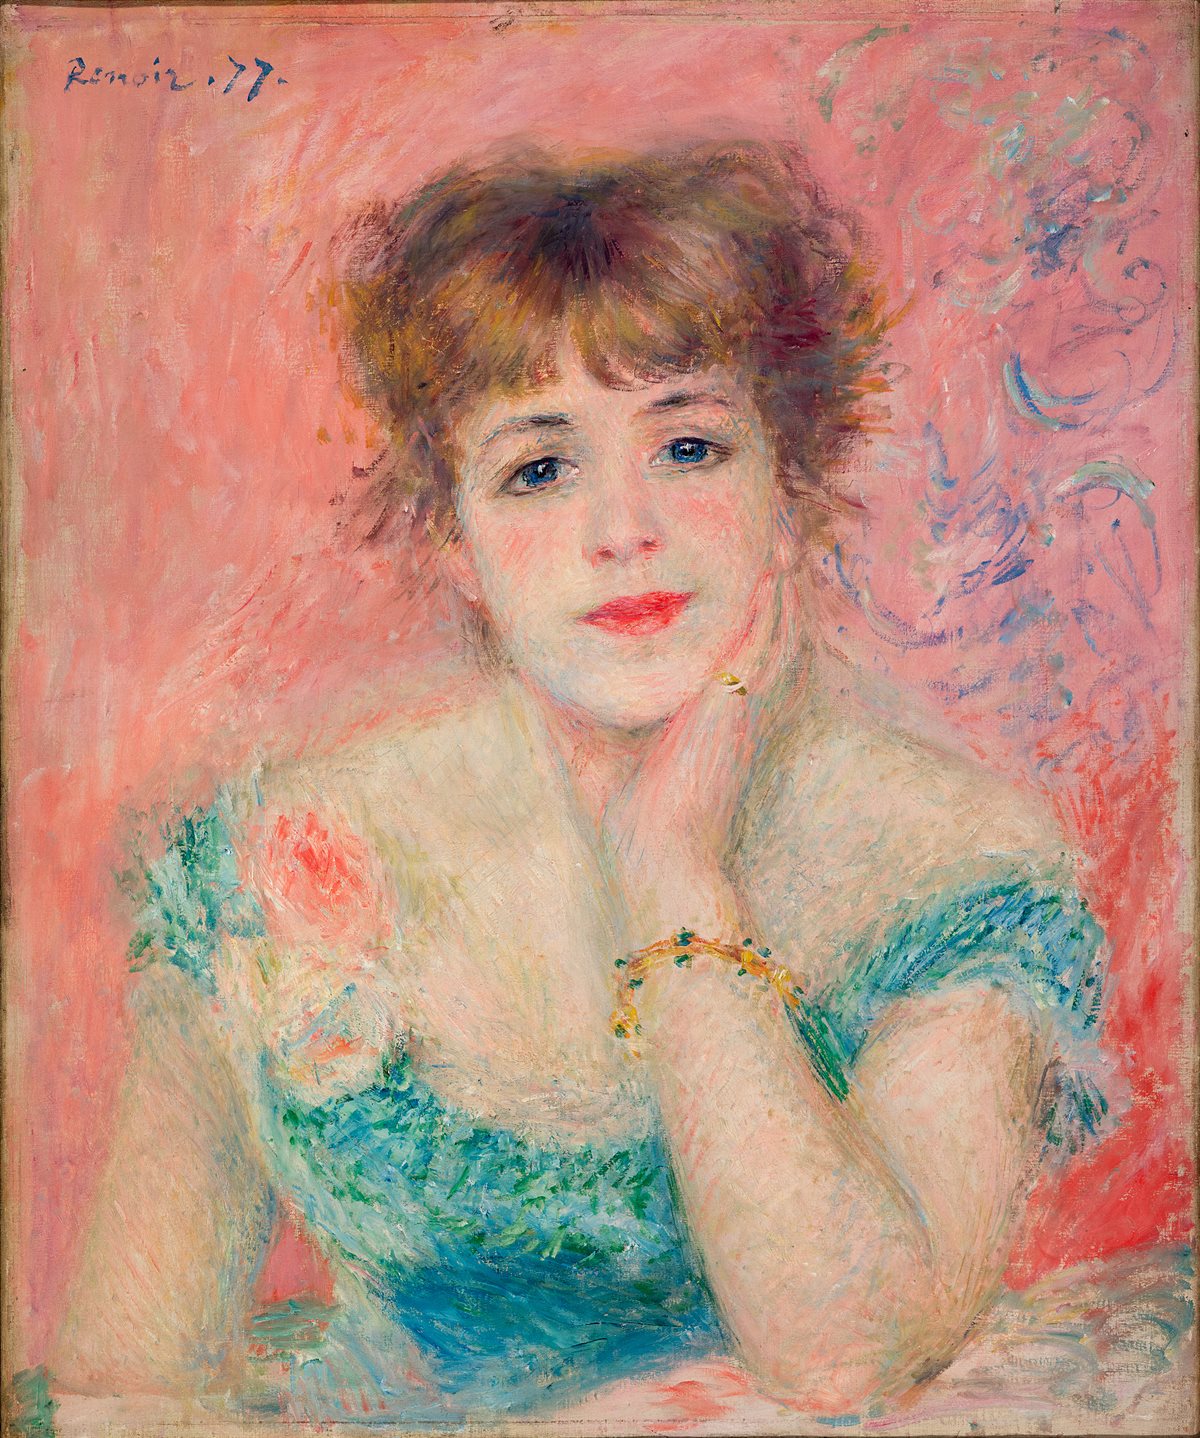 LV Fondation_The Morozov Collection_Auguste_Renoir_Portrait_de_Jeanne_Samary_ou_La_Reverie_Paris_1877